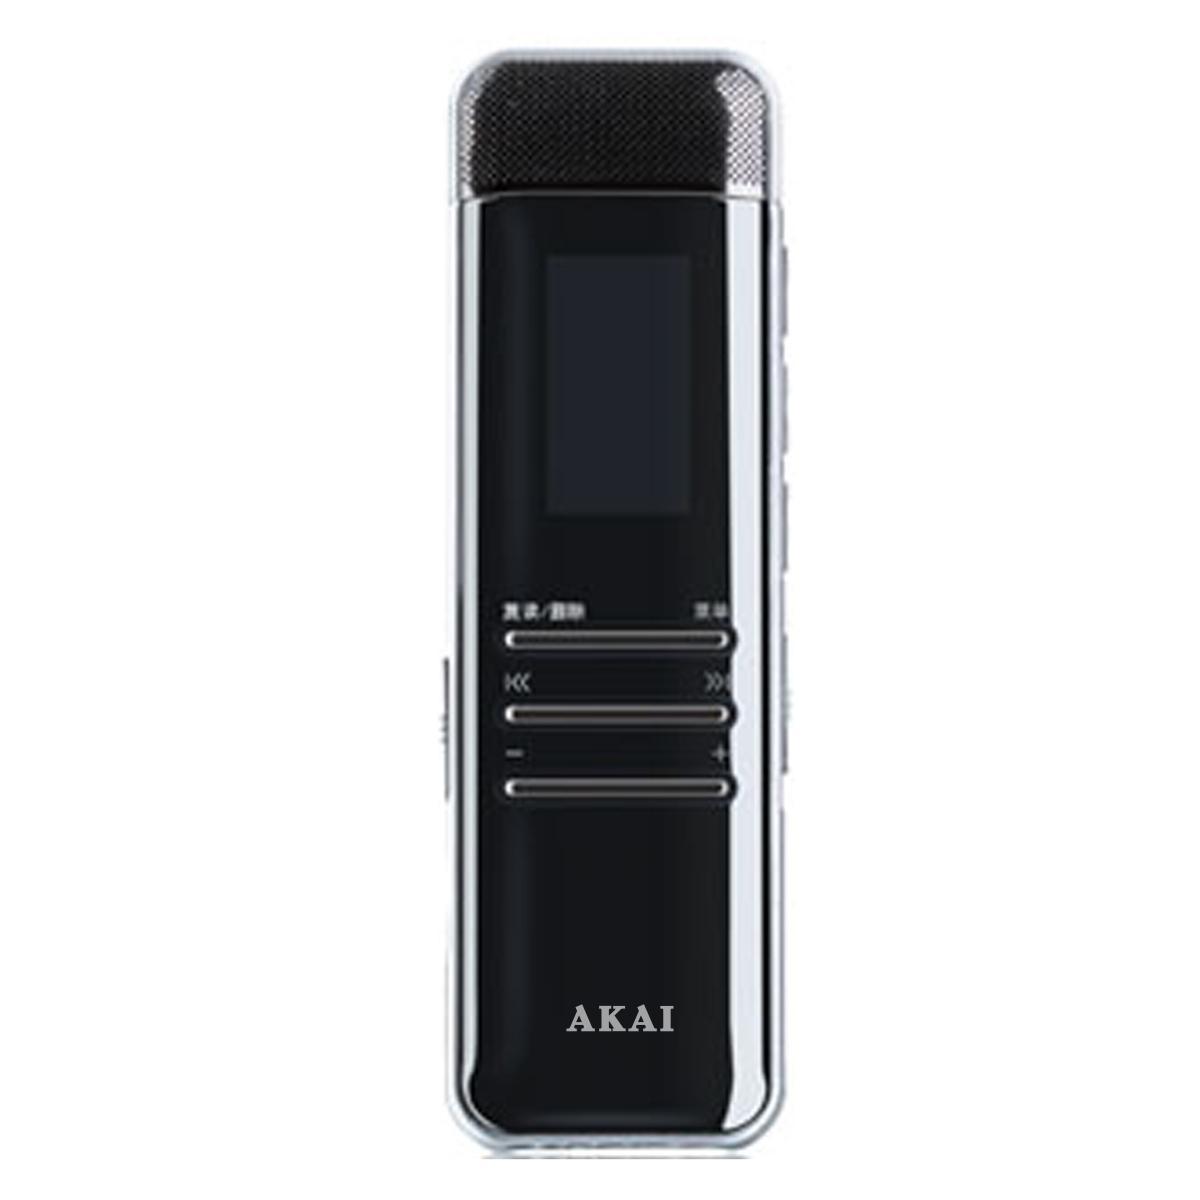 雅佳 A08 2GB 时尚 IML亮丽外观 远距离 专业高清录音笔